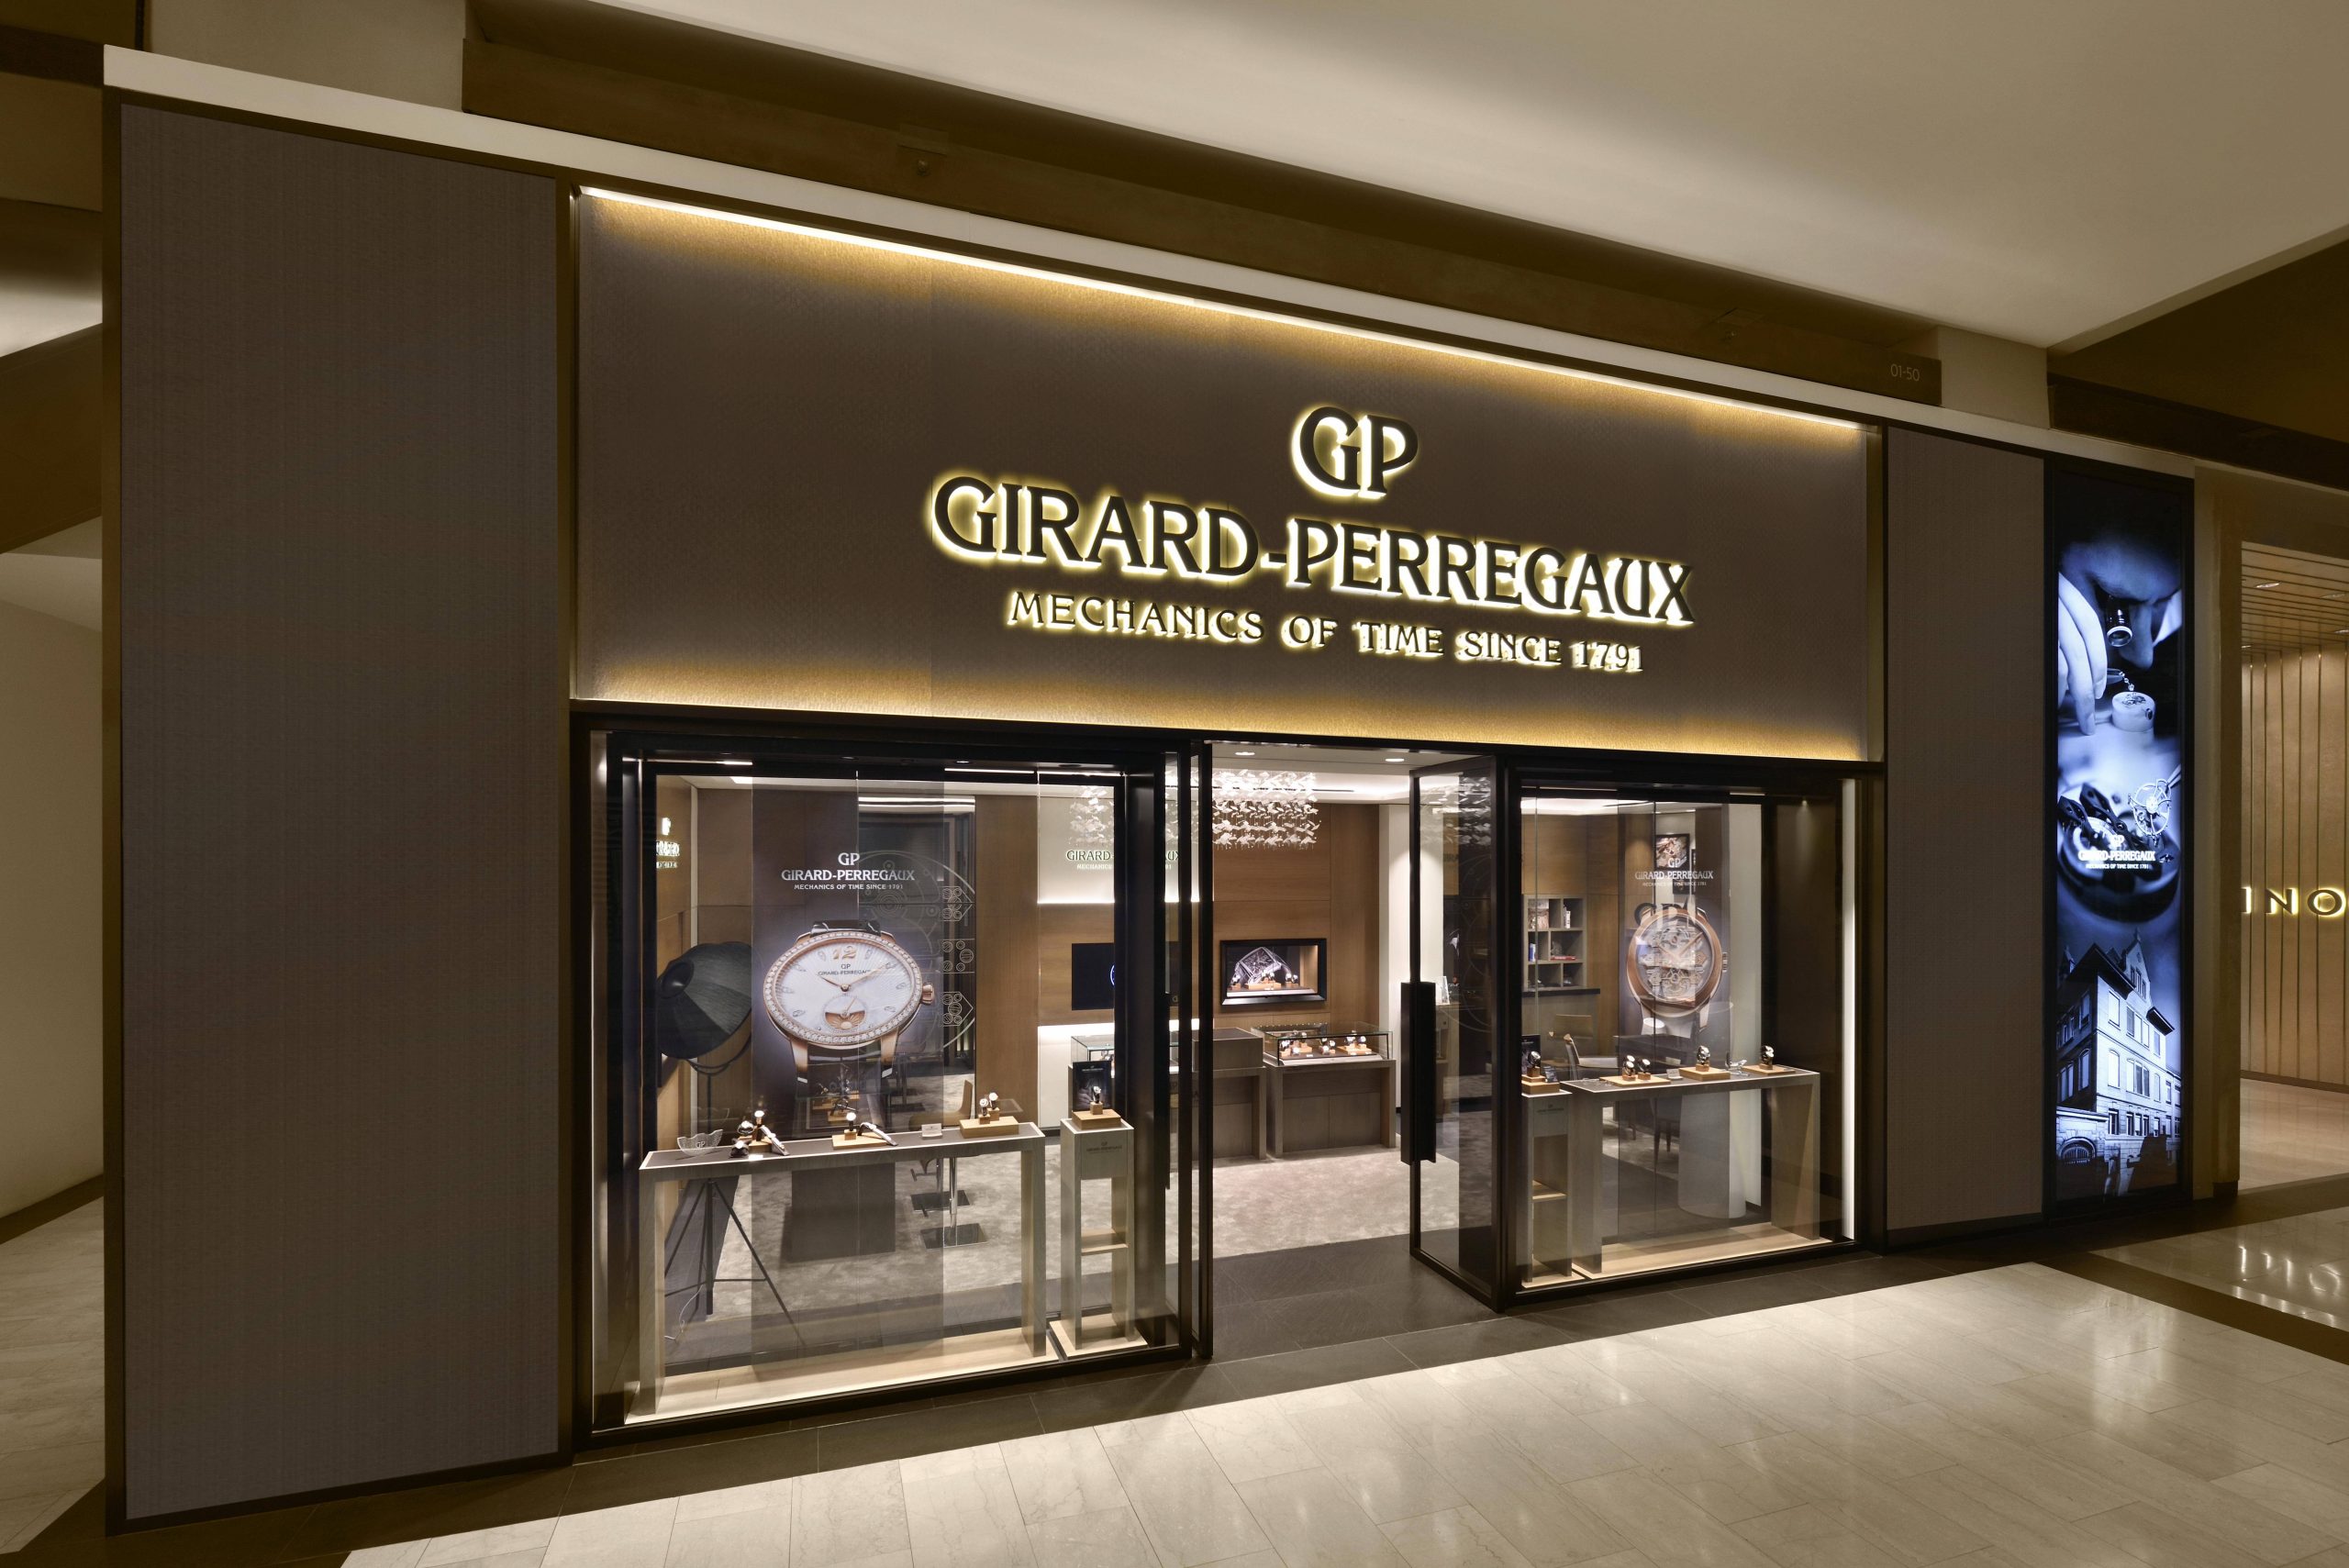 Girard-Perregaux Hour Glass Singapore Girard-Perregaux boutique facade side profile